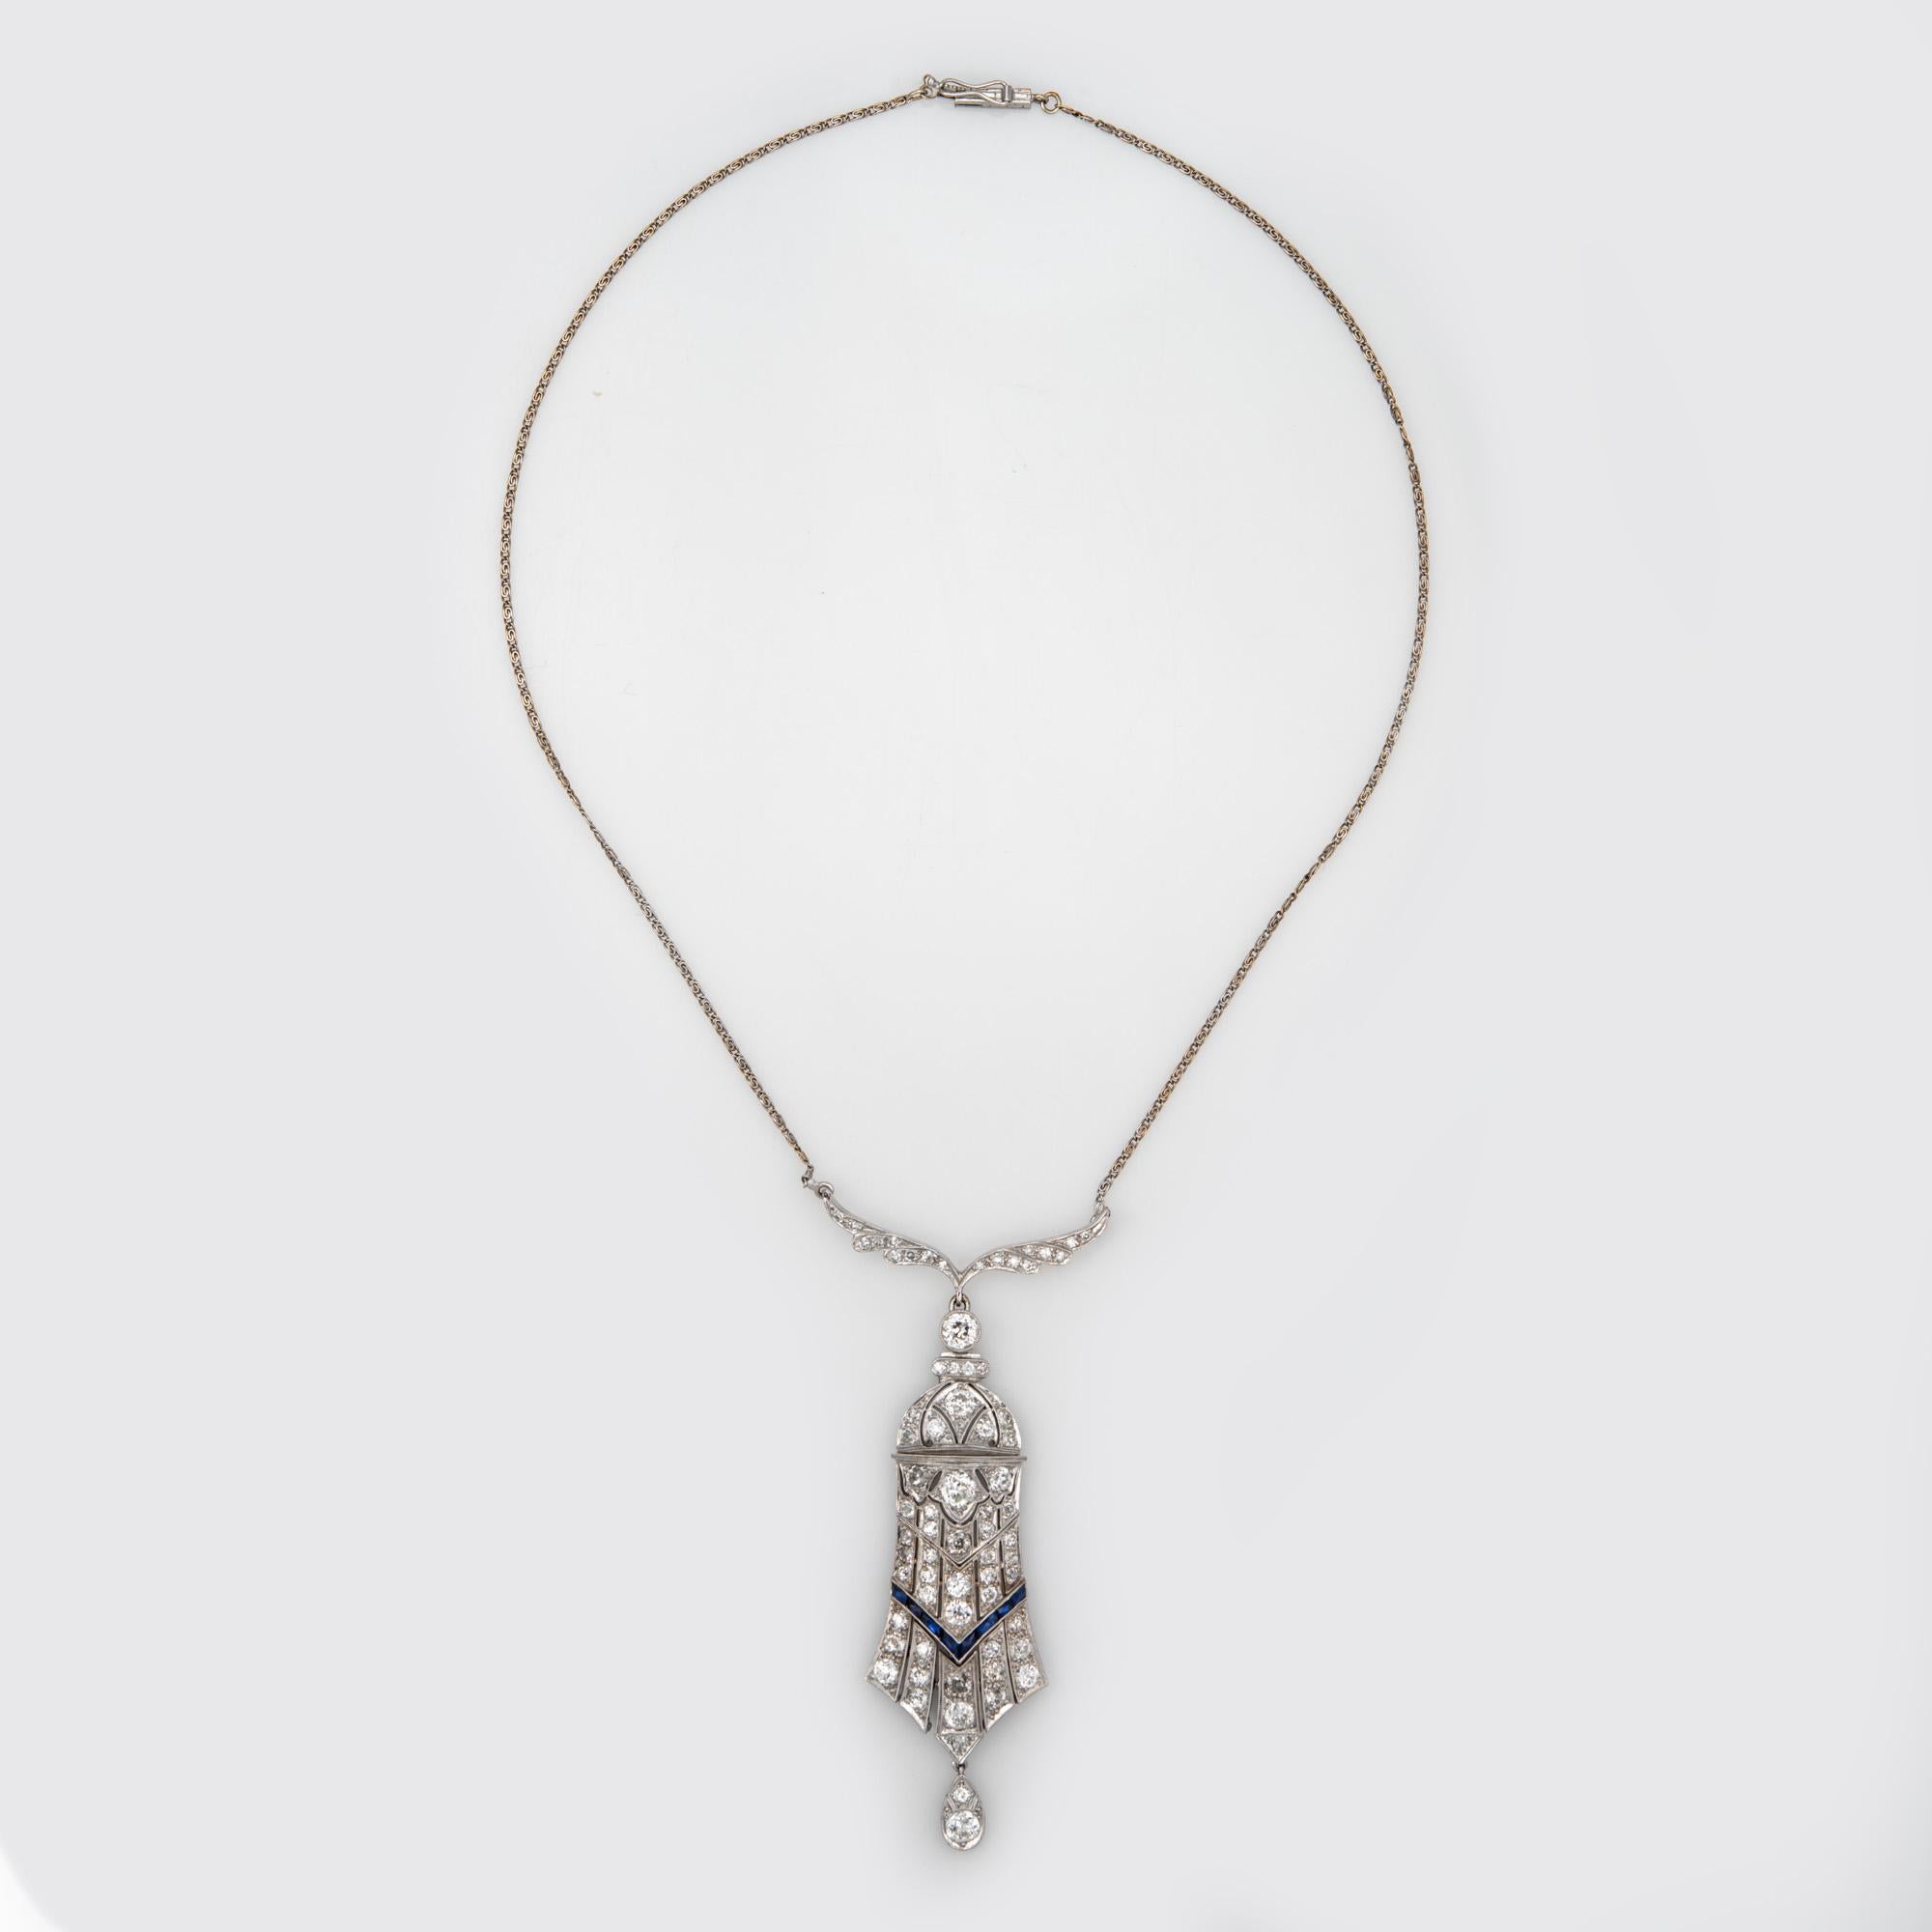 Collier de diamants vintage de l'époque Art Deco (circa 1920-1930), finement détaillé, réalisé en or blanc 14 carats (chaîne) et en platine.  

Les diamants de taille européenne ancienne totalisent un poids estimé à 4 carats. De petits saphirs de